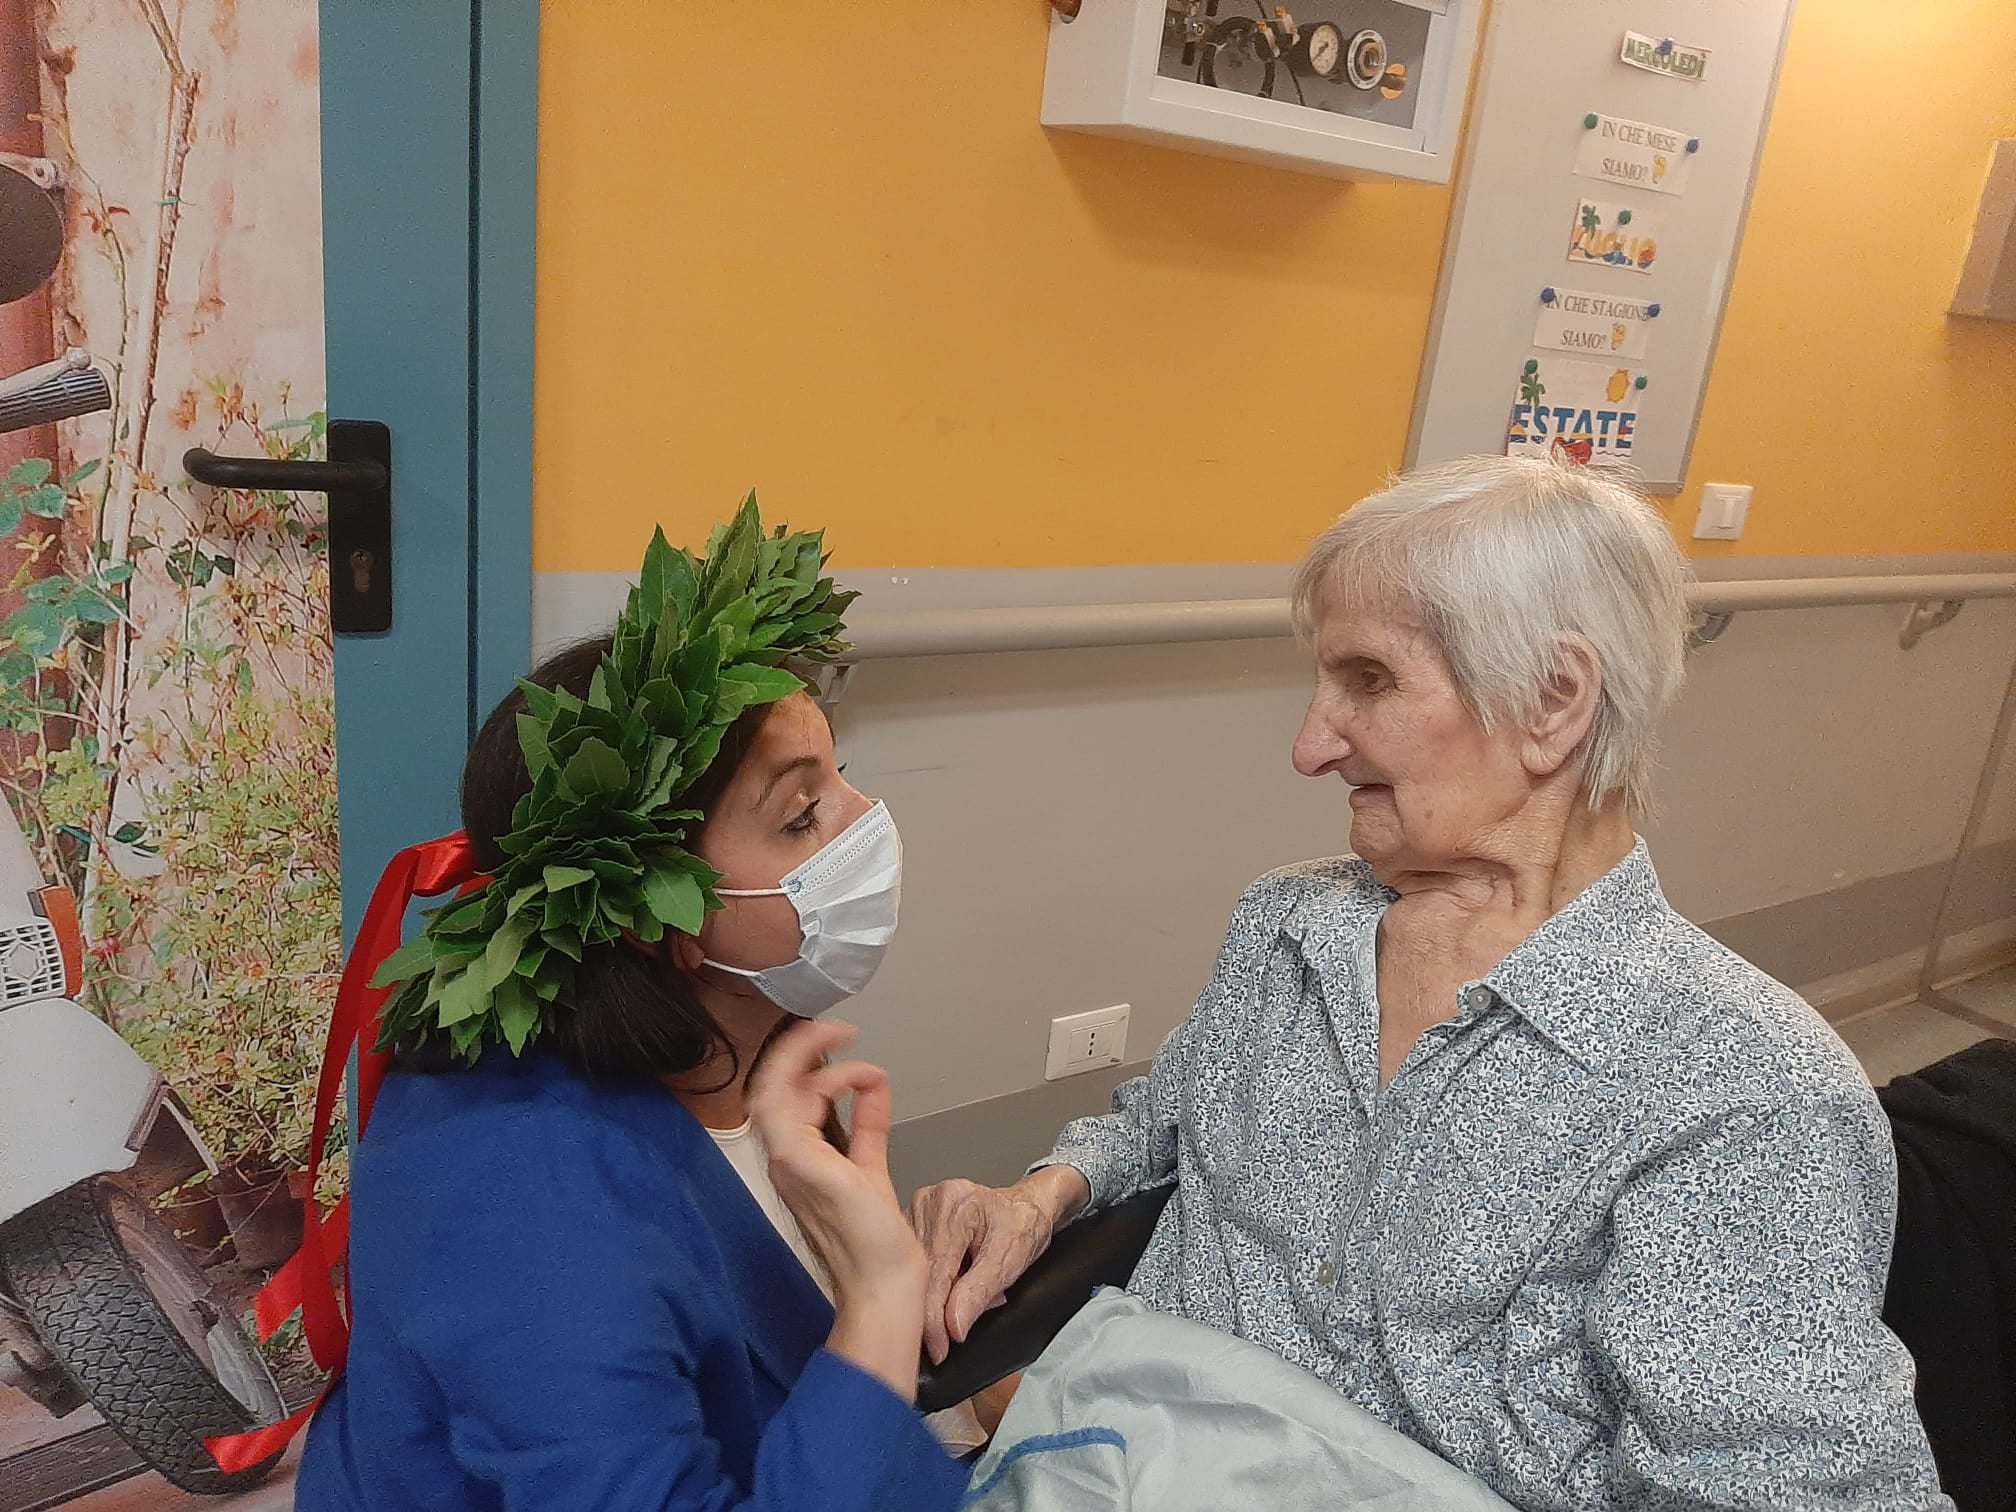 Saronno e Uboldo unite nel lutto per la scomparsa di Maria, 103 anni: era la nonna della Focris